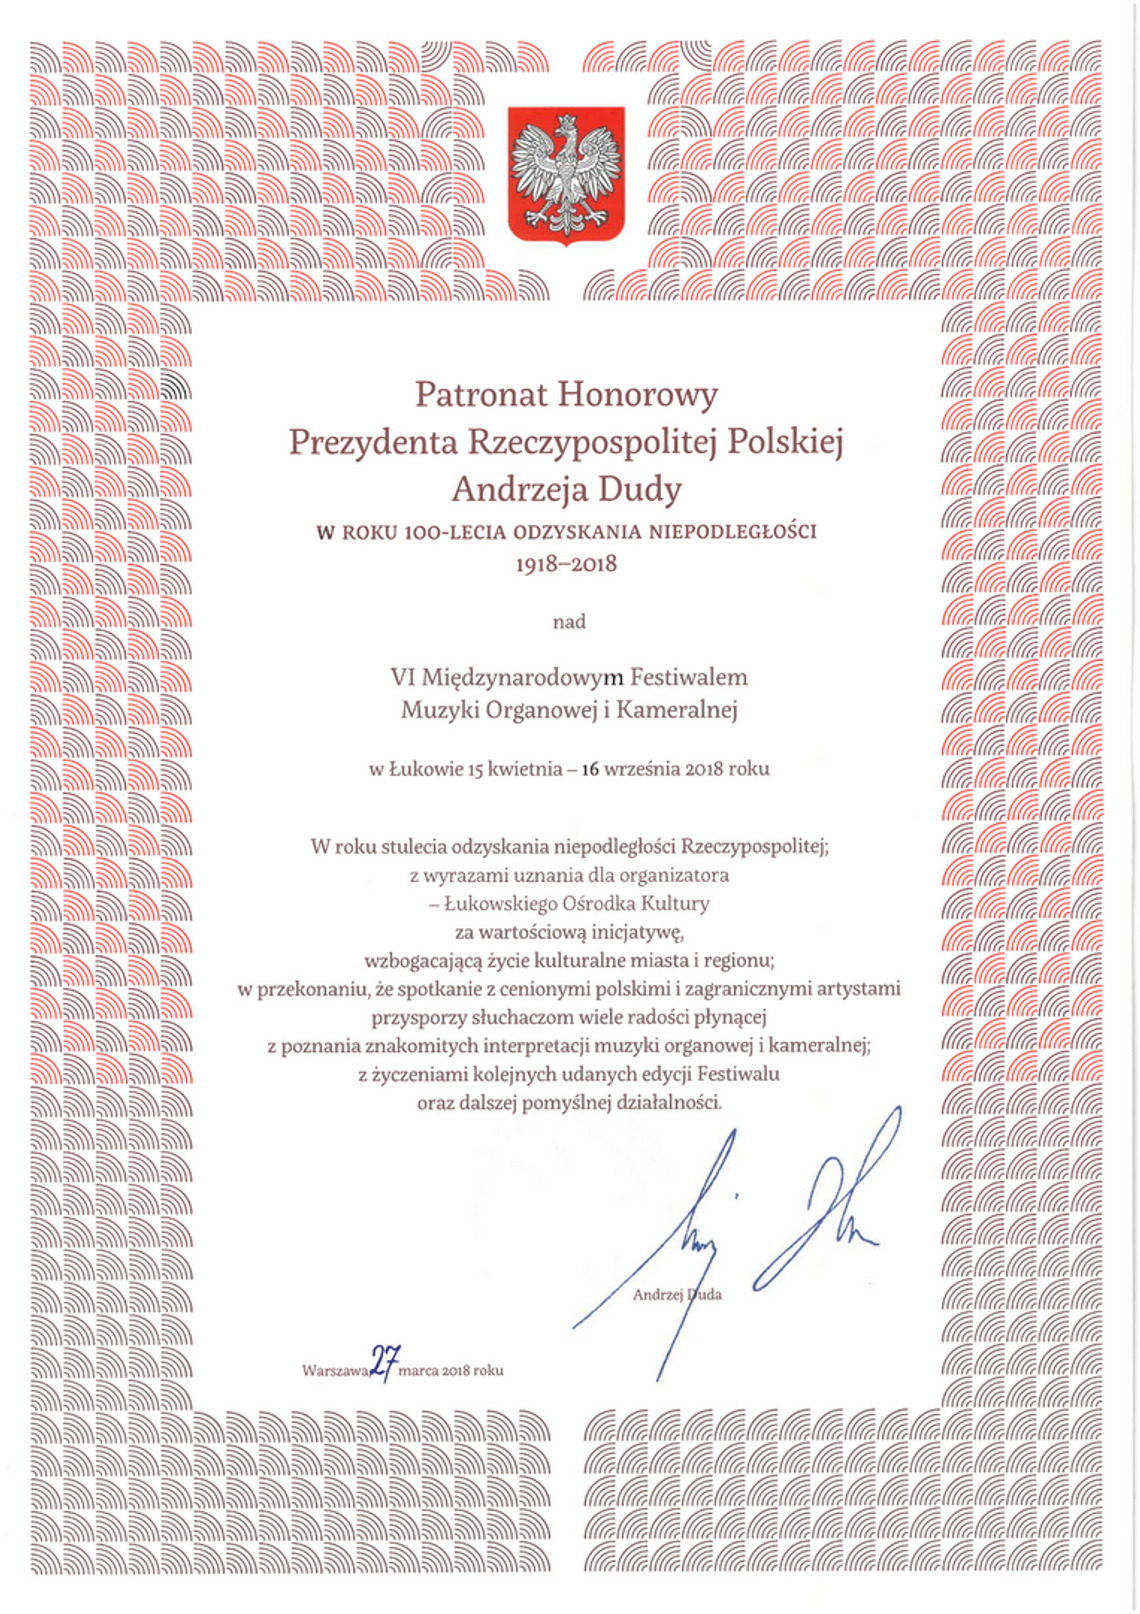 Certyfikat Patronatu Honorowego Prezydenta RP Andrzeja Dudy nad „VI Międzynarodowym Festiwalem Muzyki Organowej i Kameralnej w Łukowie”